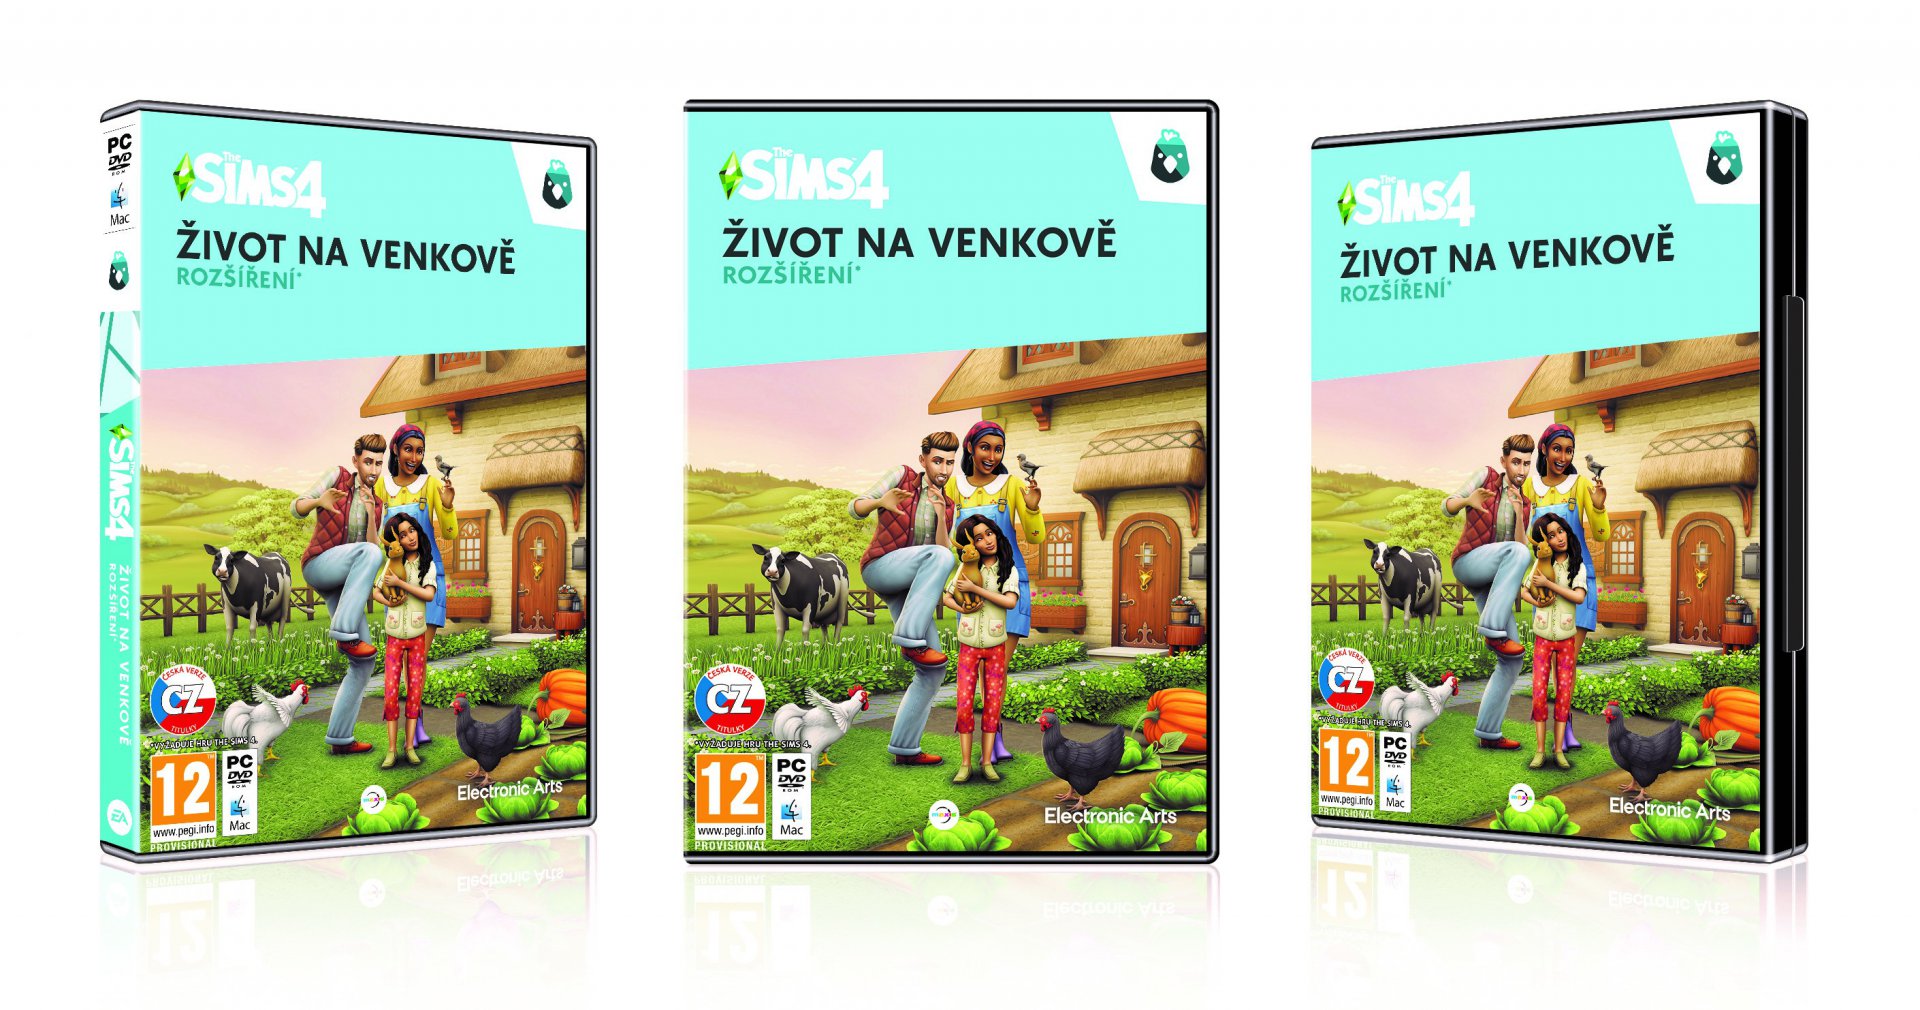 The Sims 4 - Život na venkově (PC) 5030945123941